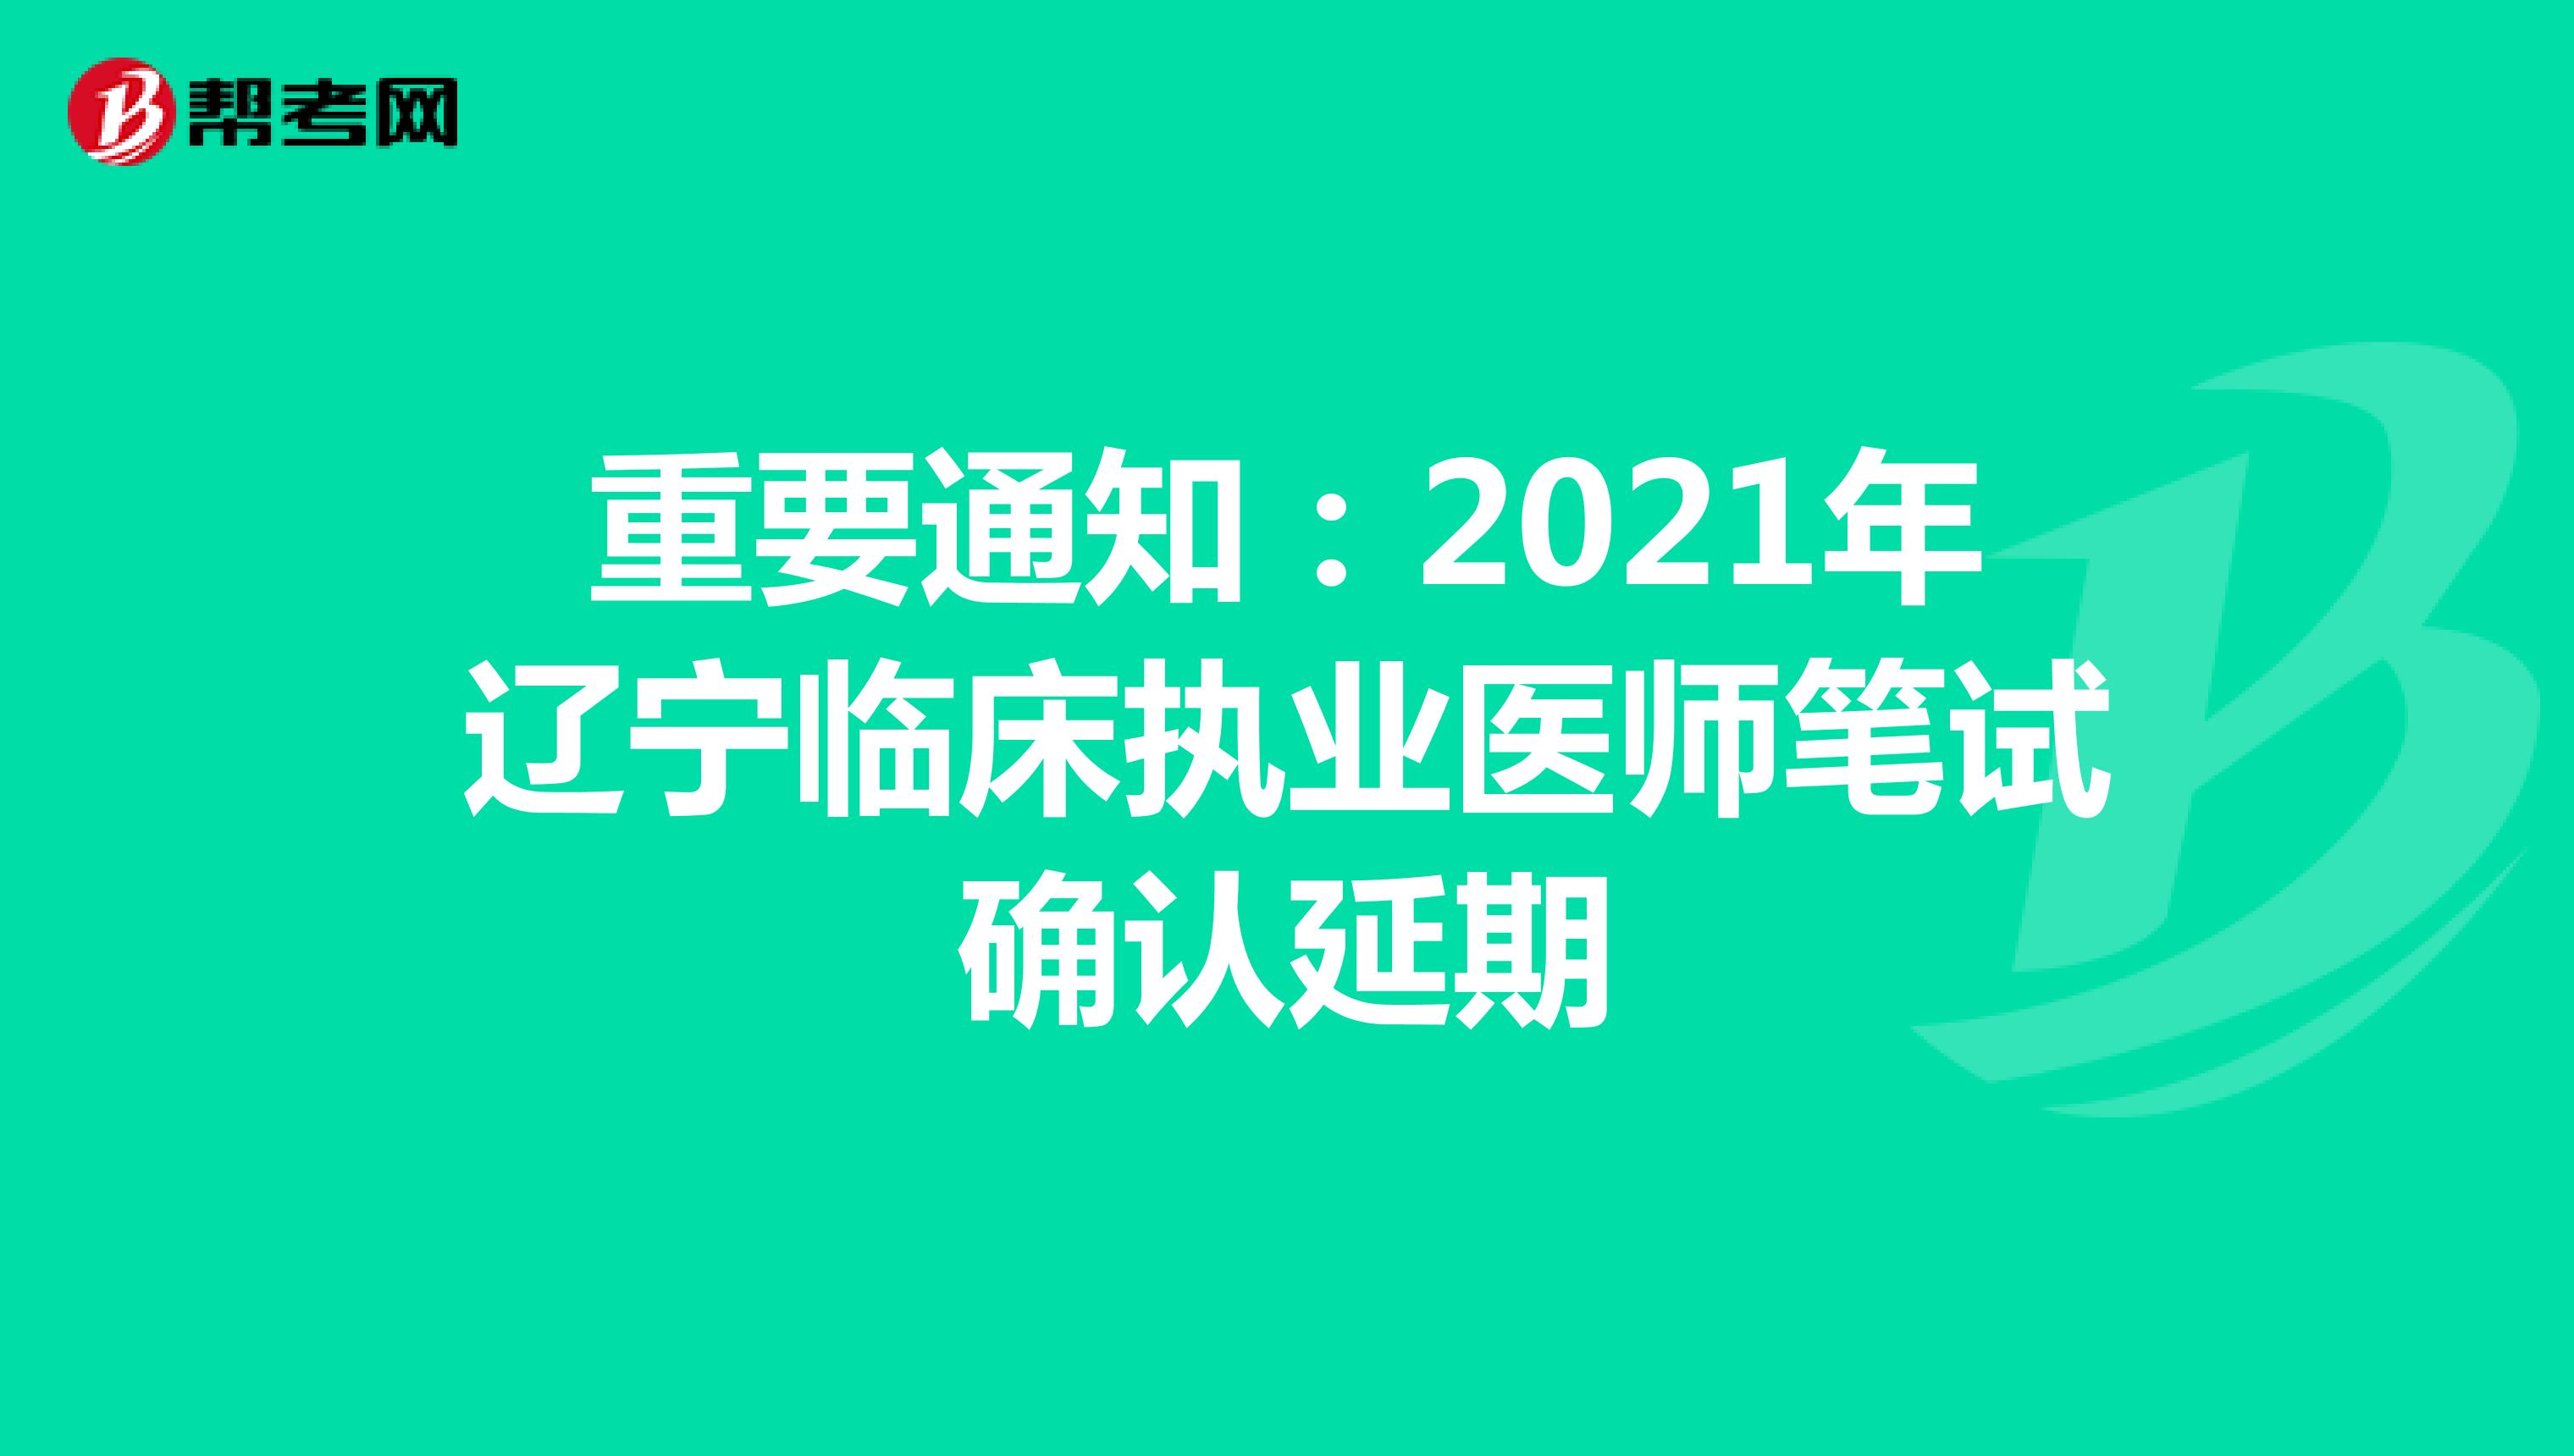 重要通知：2021年辽宁临床执业医师笔试确认延期